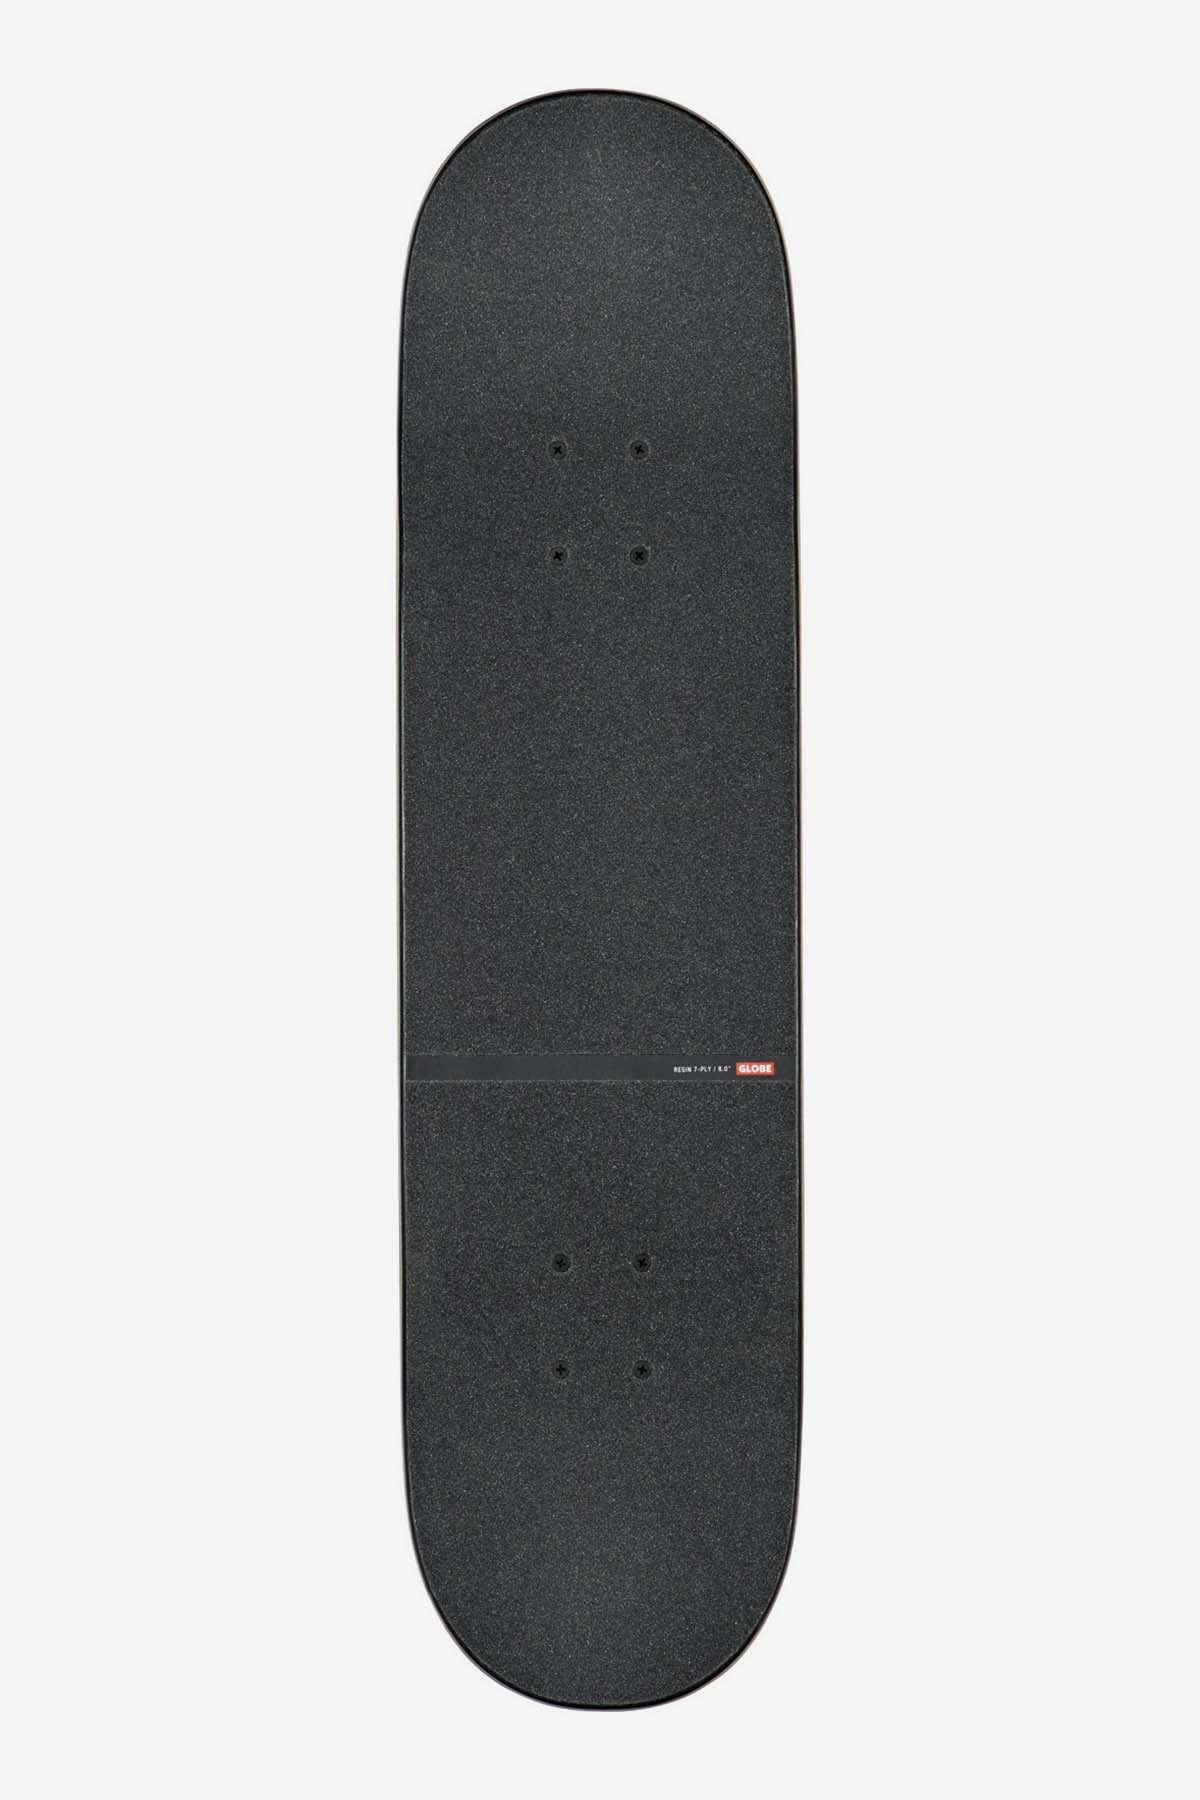 Globe - Blocchi G1 D - nero/giallo - 8,0" completo Skateboard